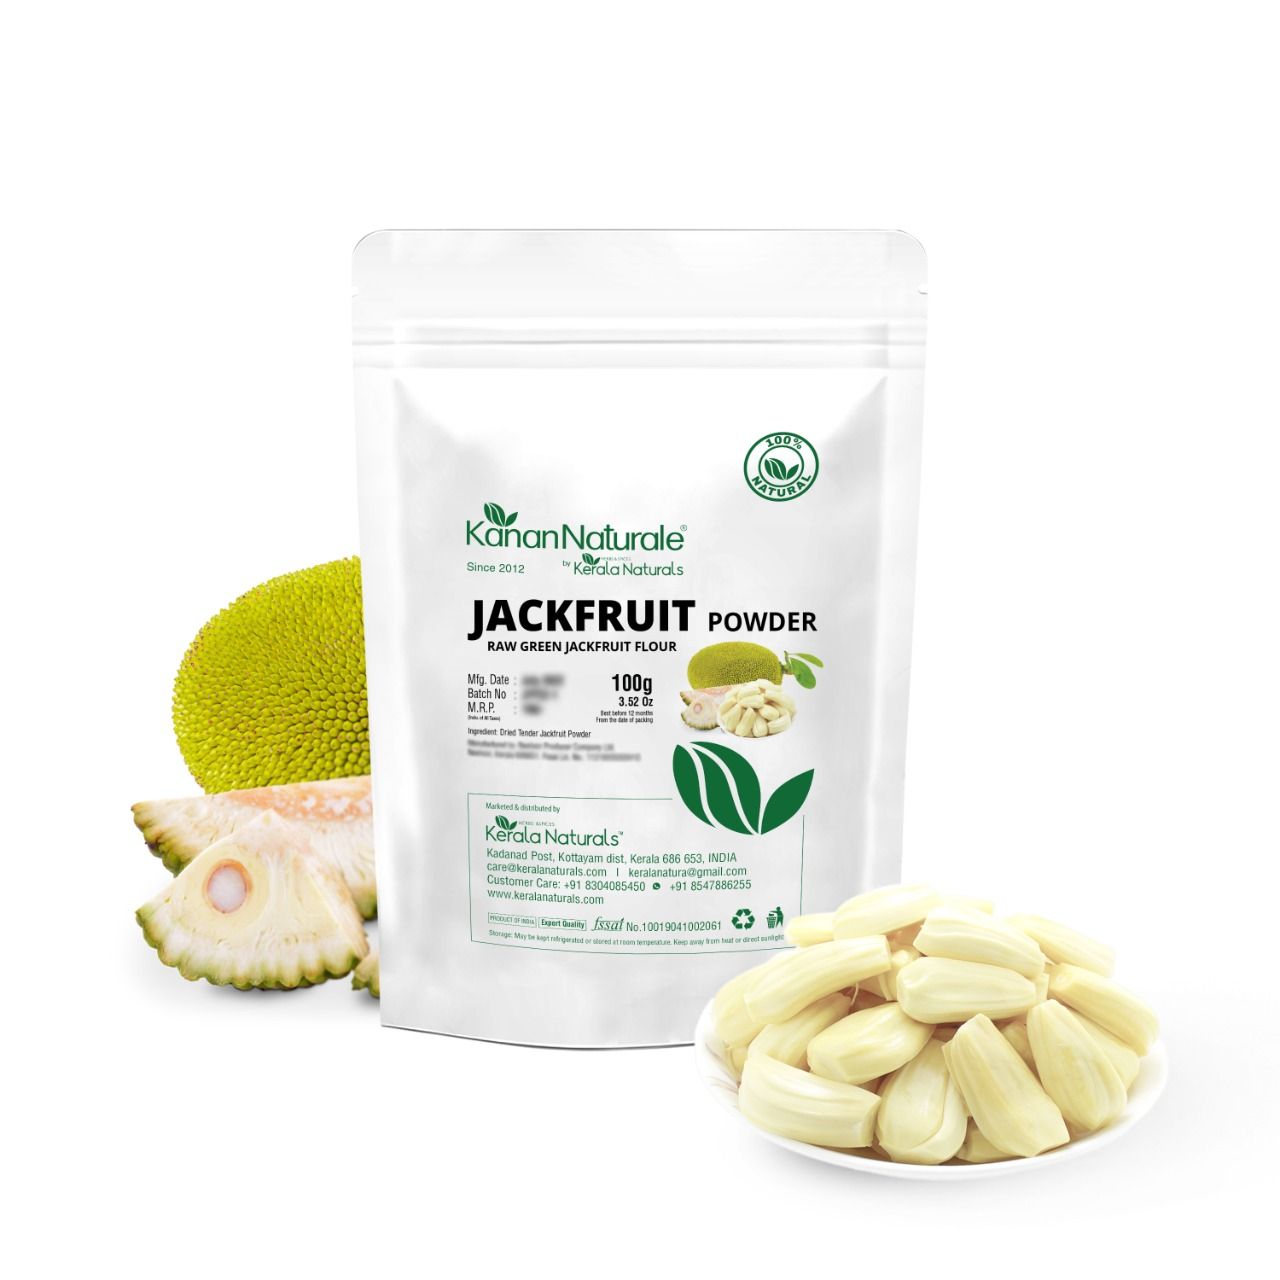 Kanan Naturale Jackfruit Powder / Raw Green Jackfruit Flour